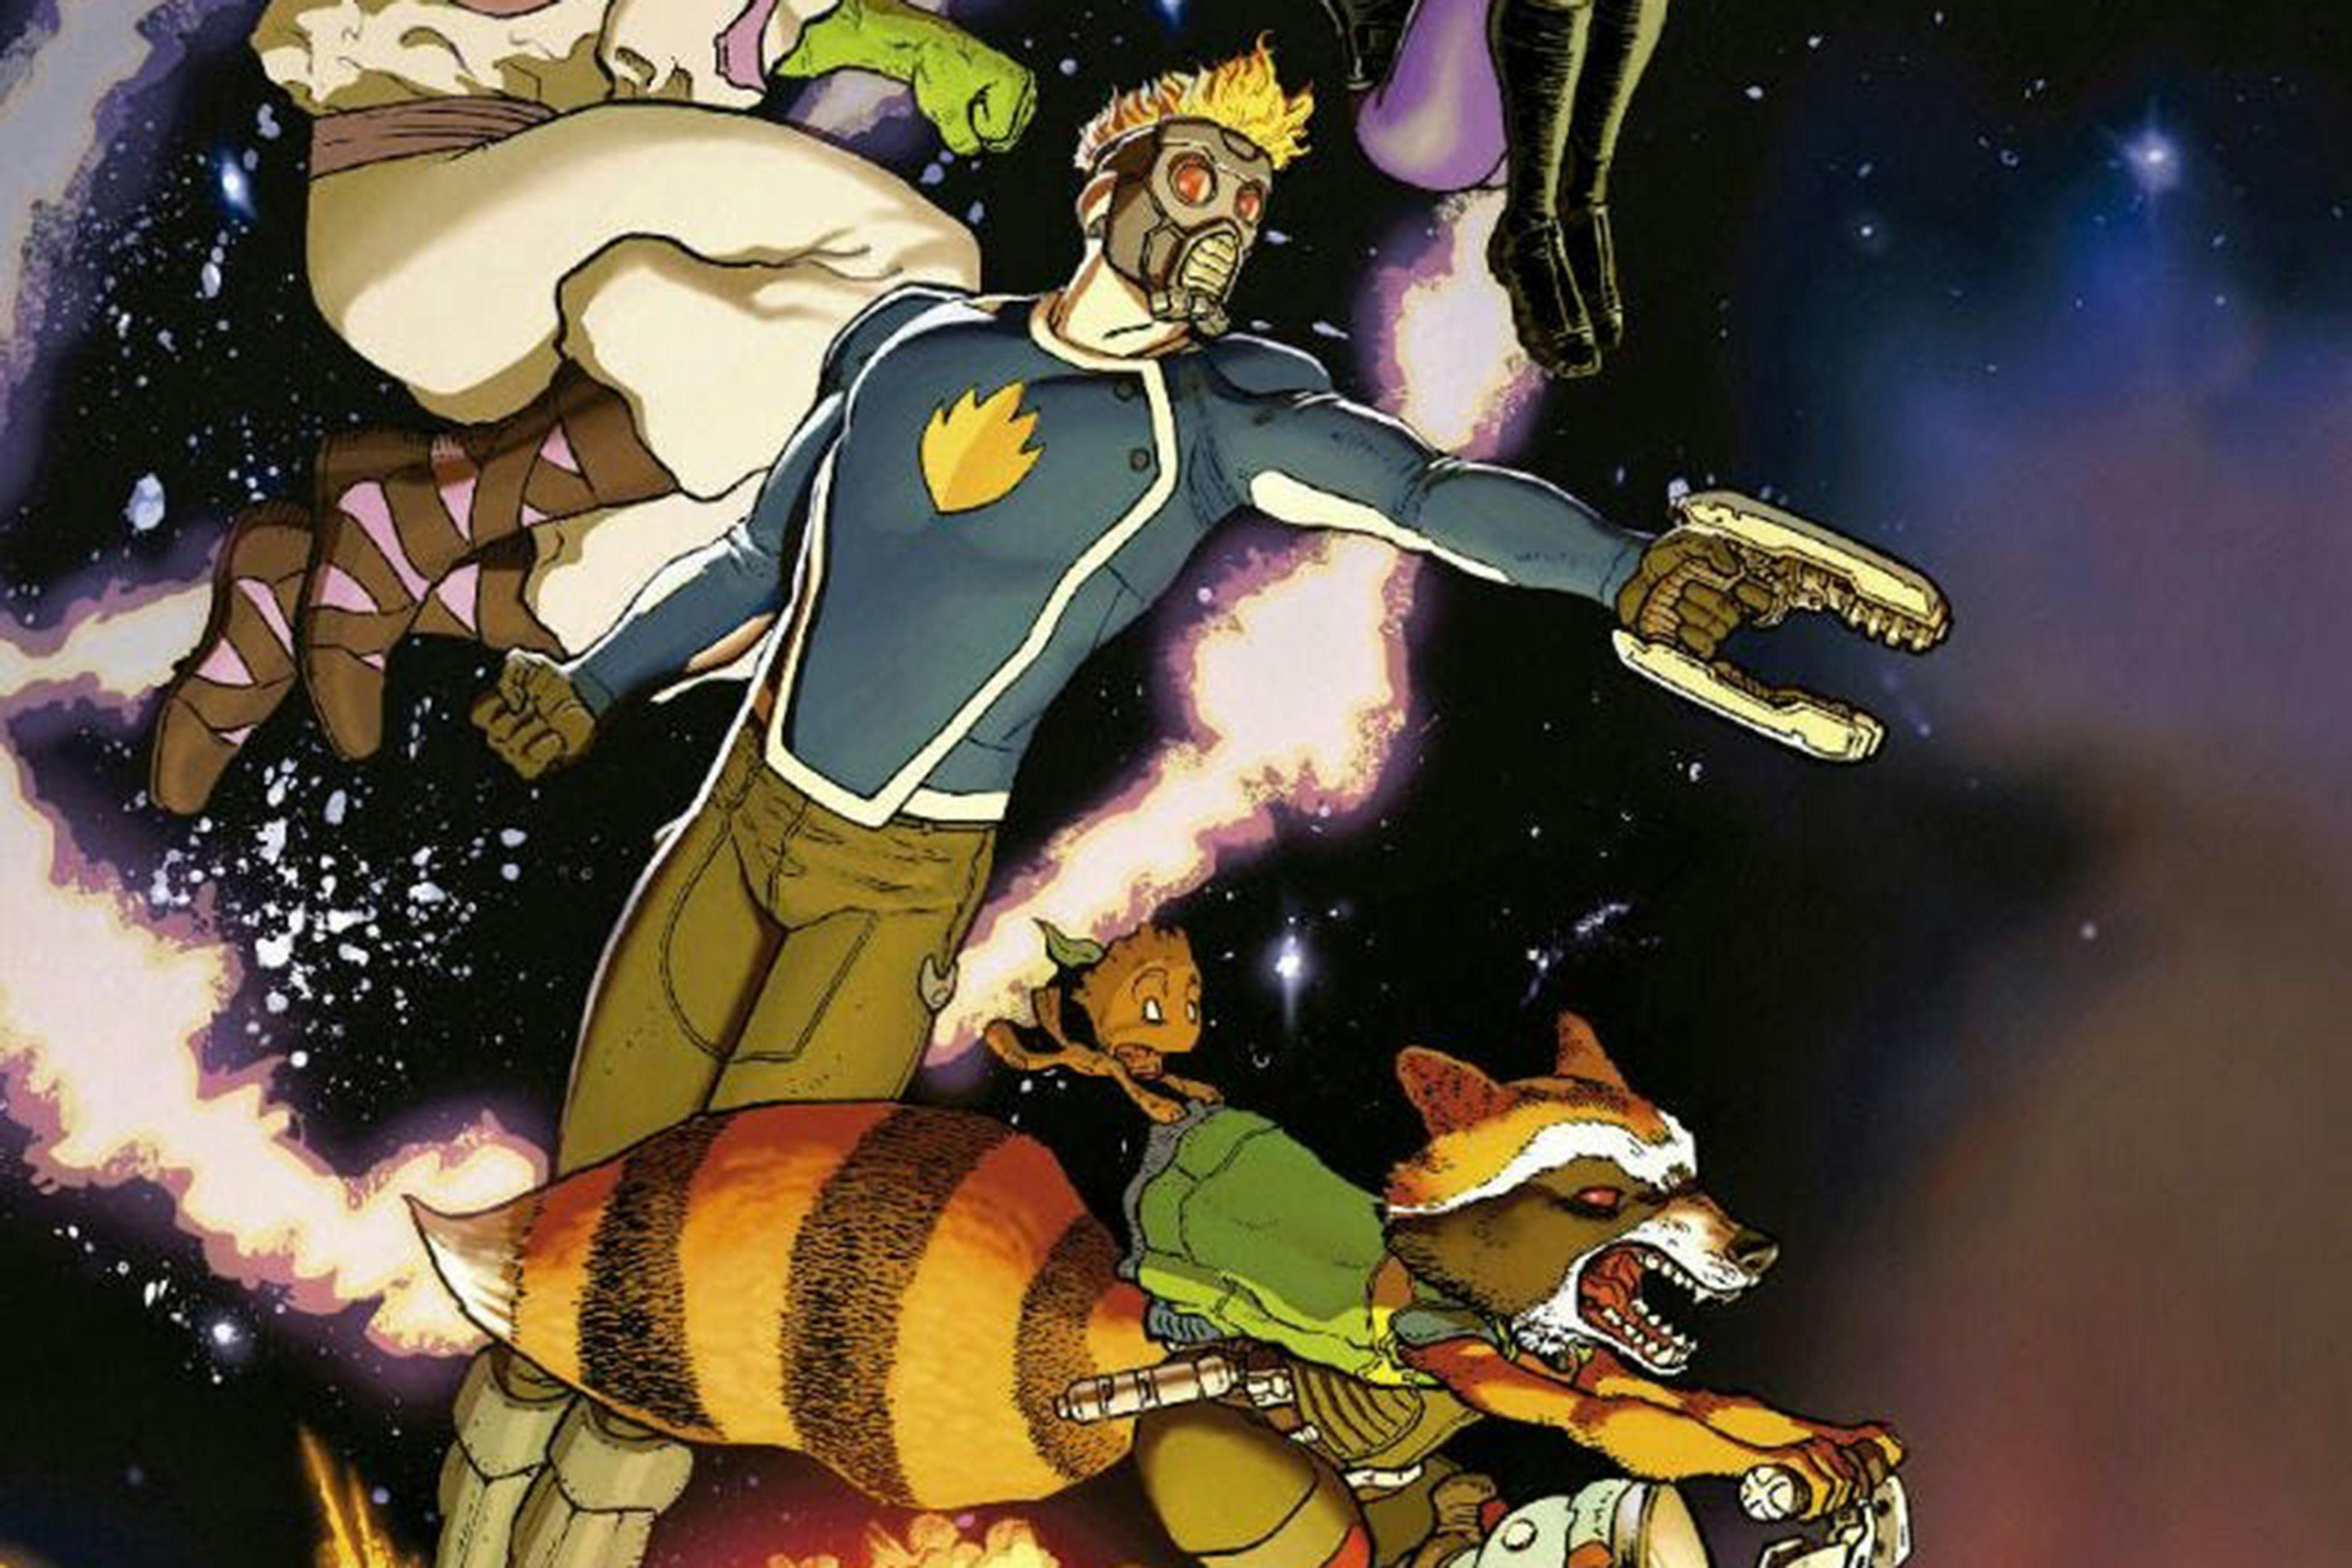 Detalles de la portada del cómic 'Jinetes en el cielo'